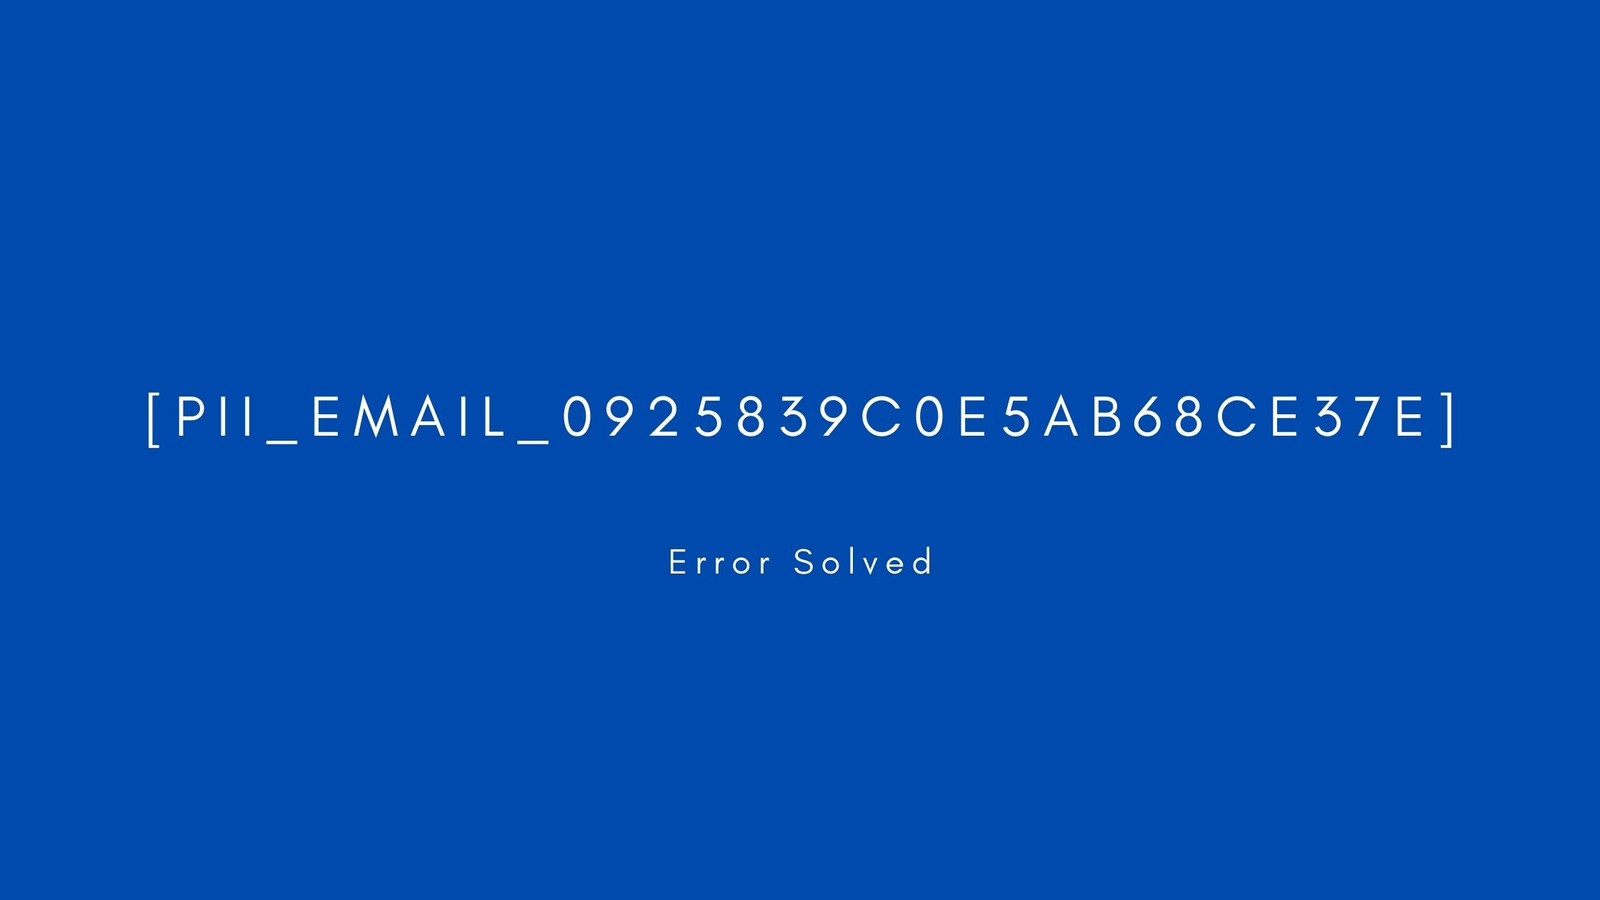 [pii_email_0925839c0e5ab68ce37e] Error resolved